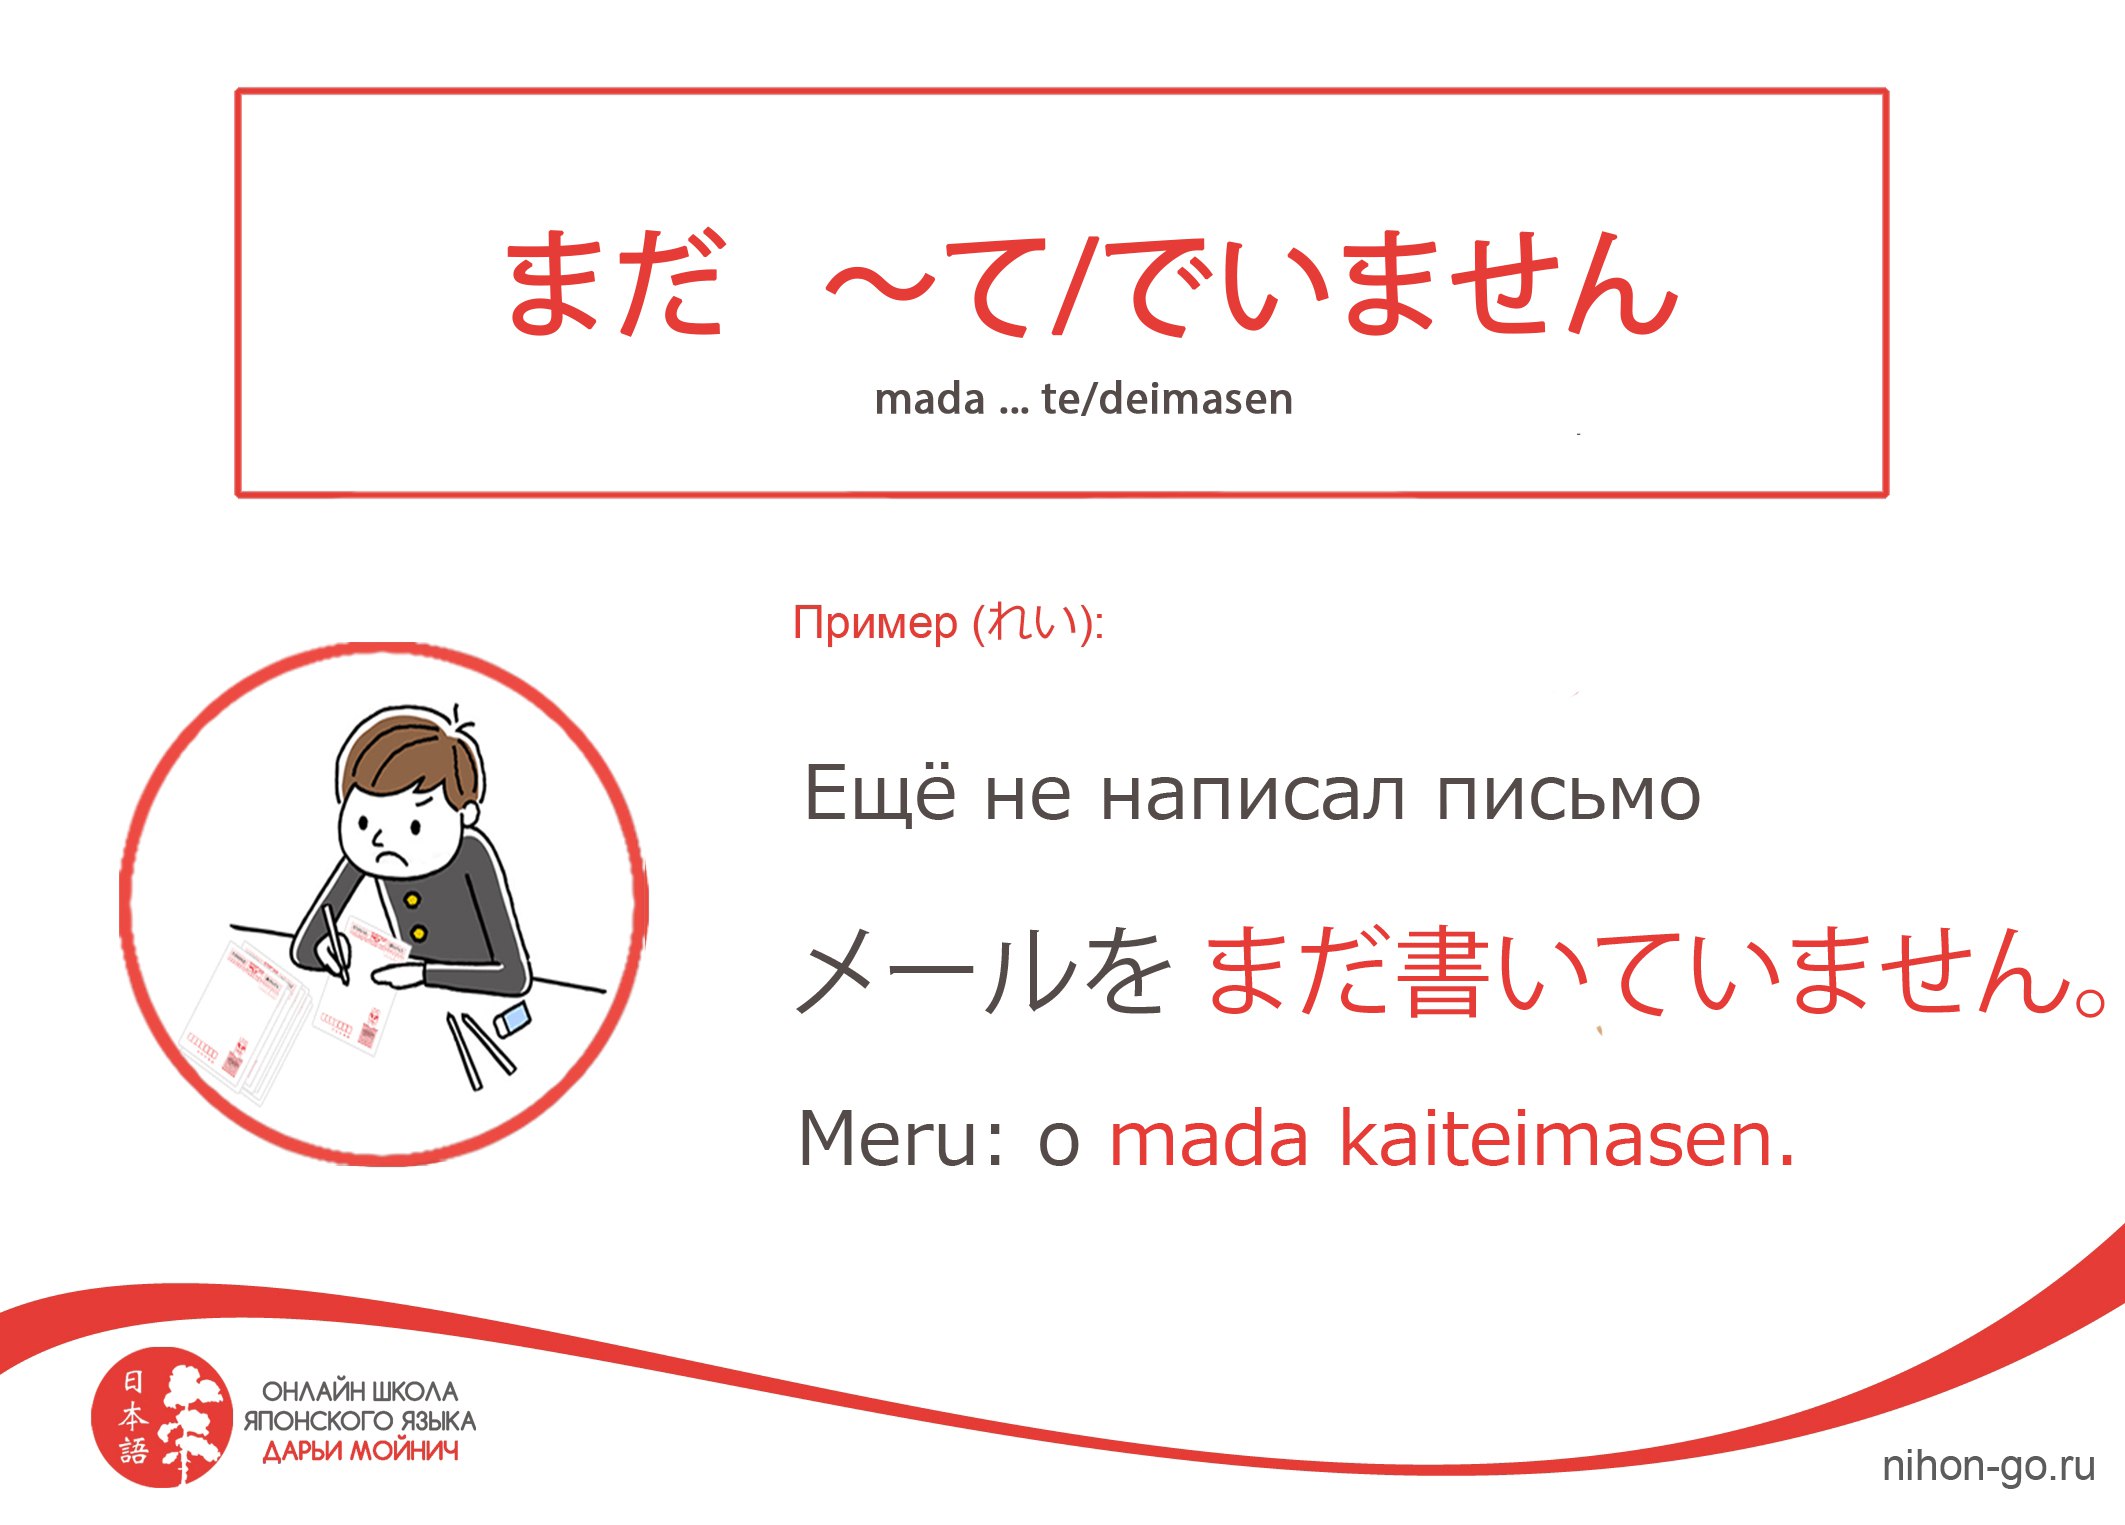 как поставить доту на японский язык фото 17